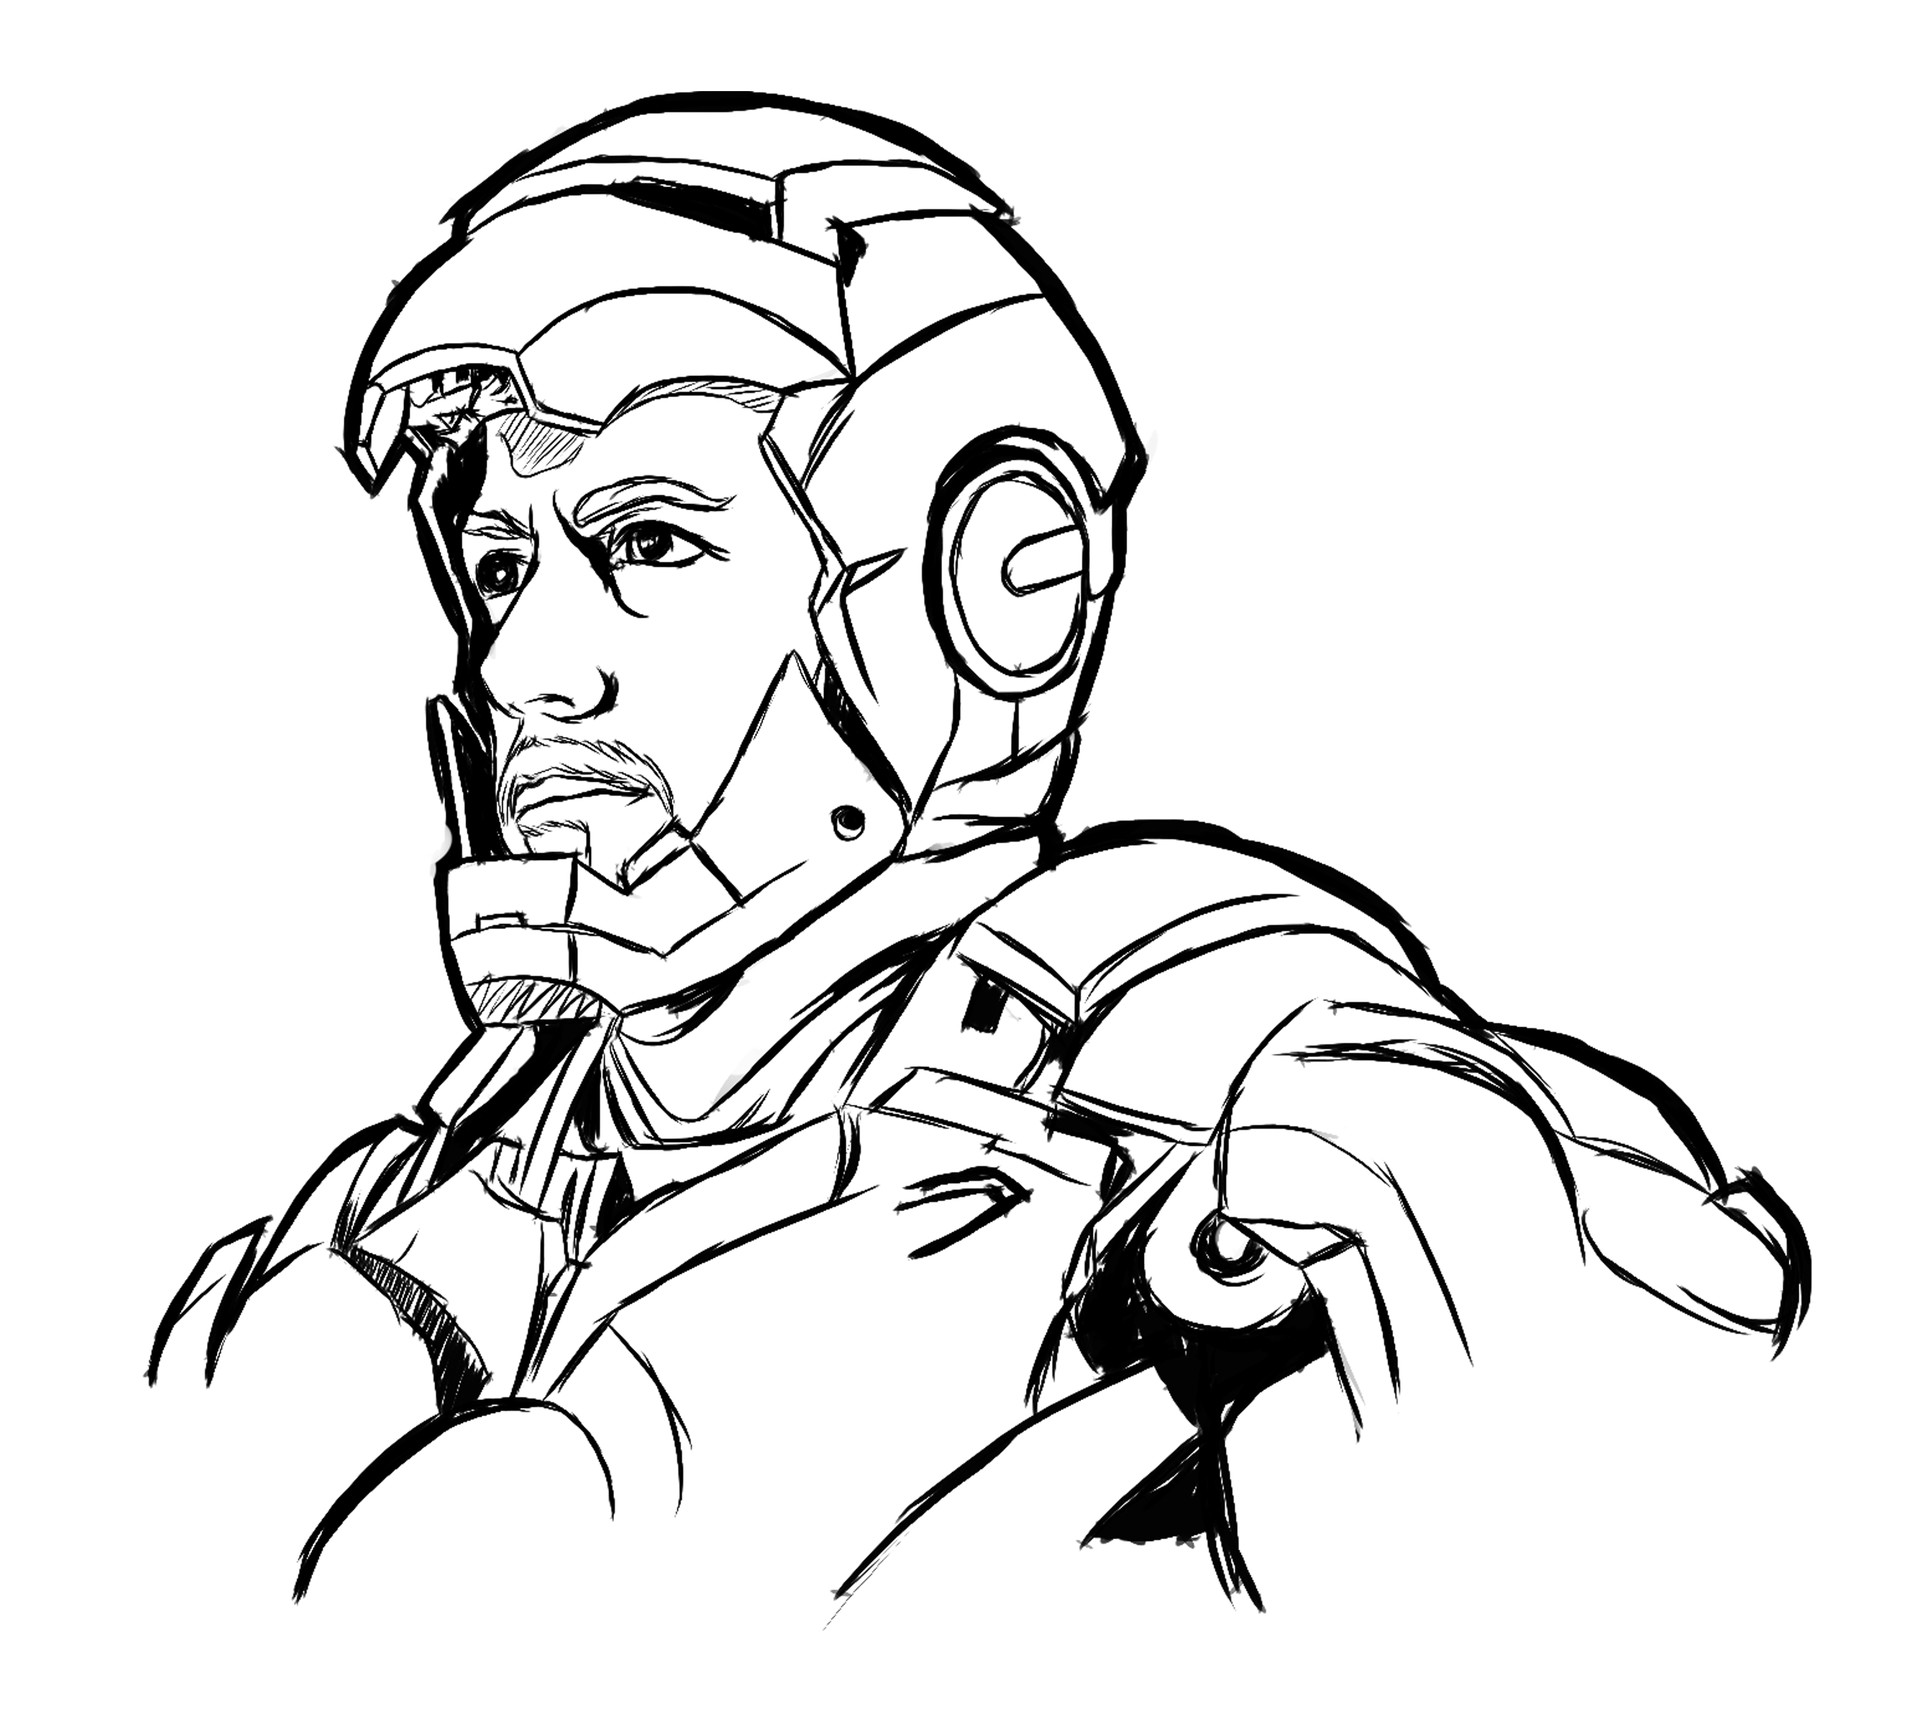 My Tony Stark Drawings - Pencil Sketch - Tony (Avengers 2) - Wattpad